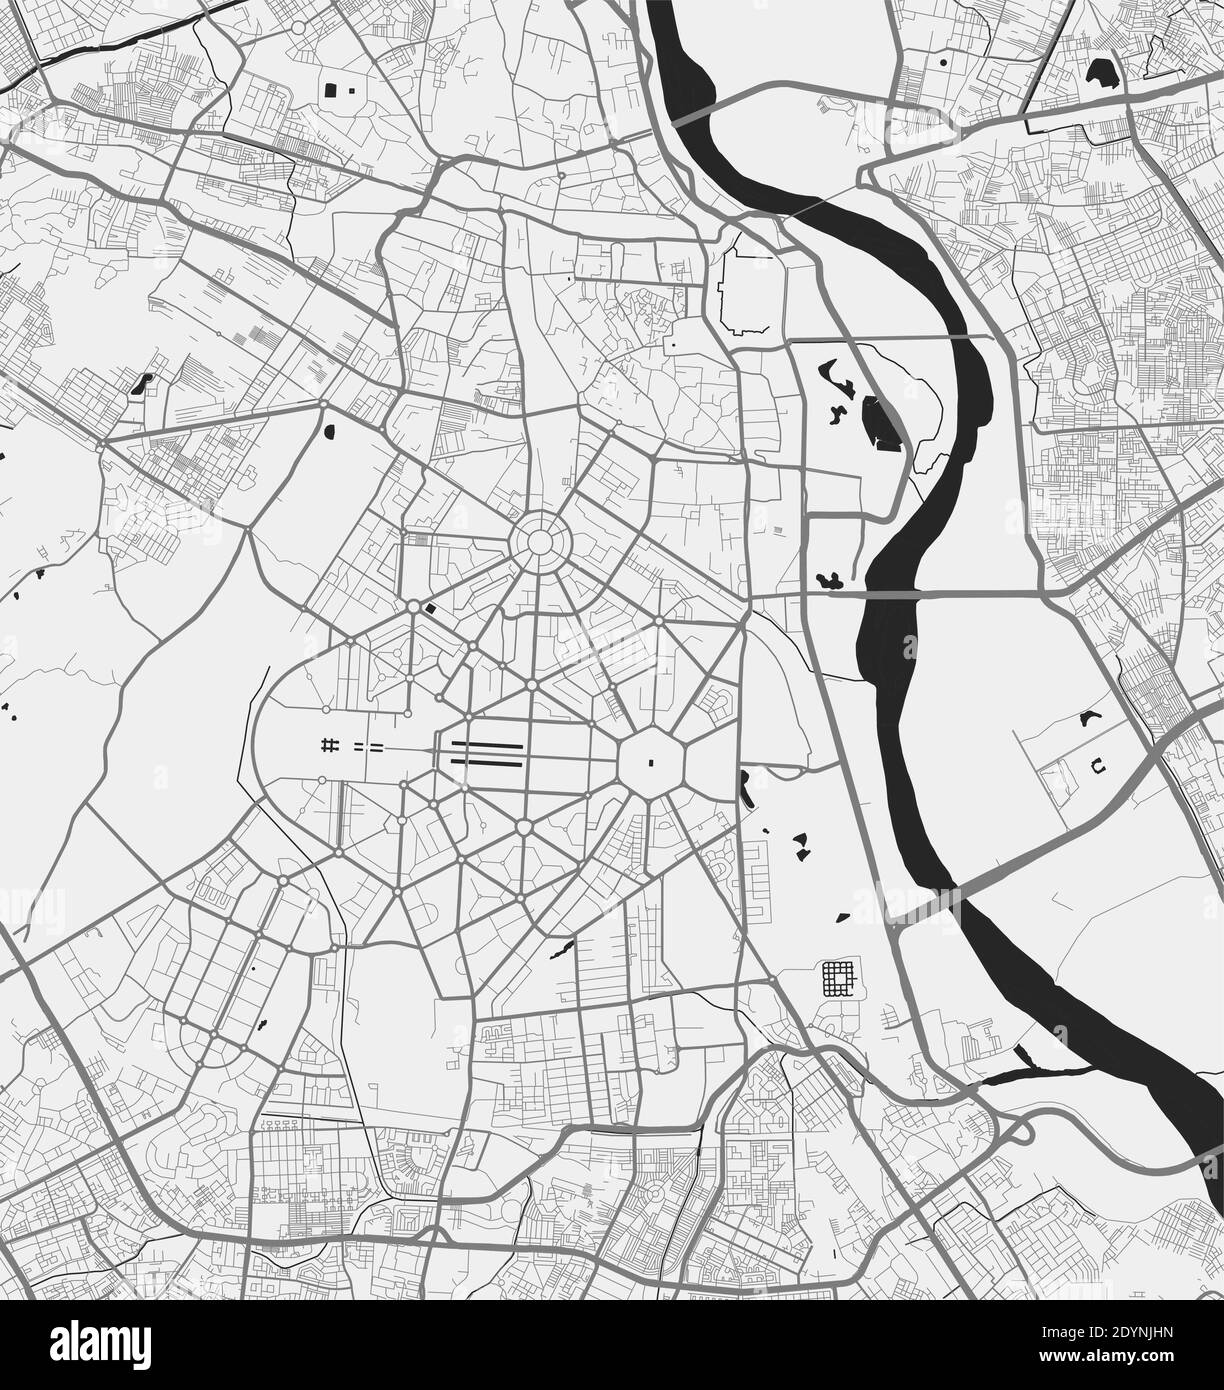 Mapa urbano de Delhi. Vector ilustración, mapa de Delhi cartel de arte en escala de grises. Imagen de mapa de calles con carreteras, vista del área metropolitana de la ciudad. Ilustración del Vector